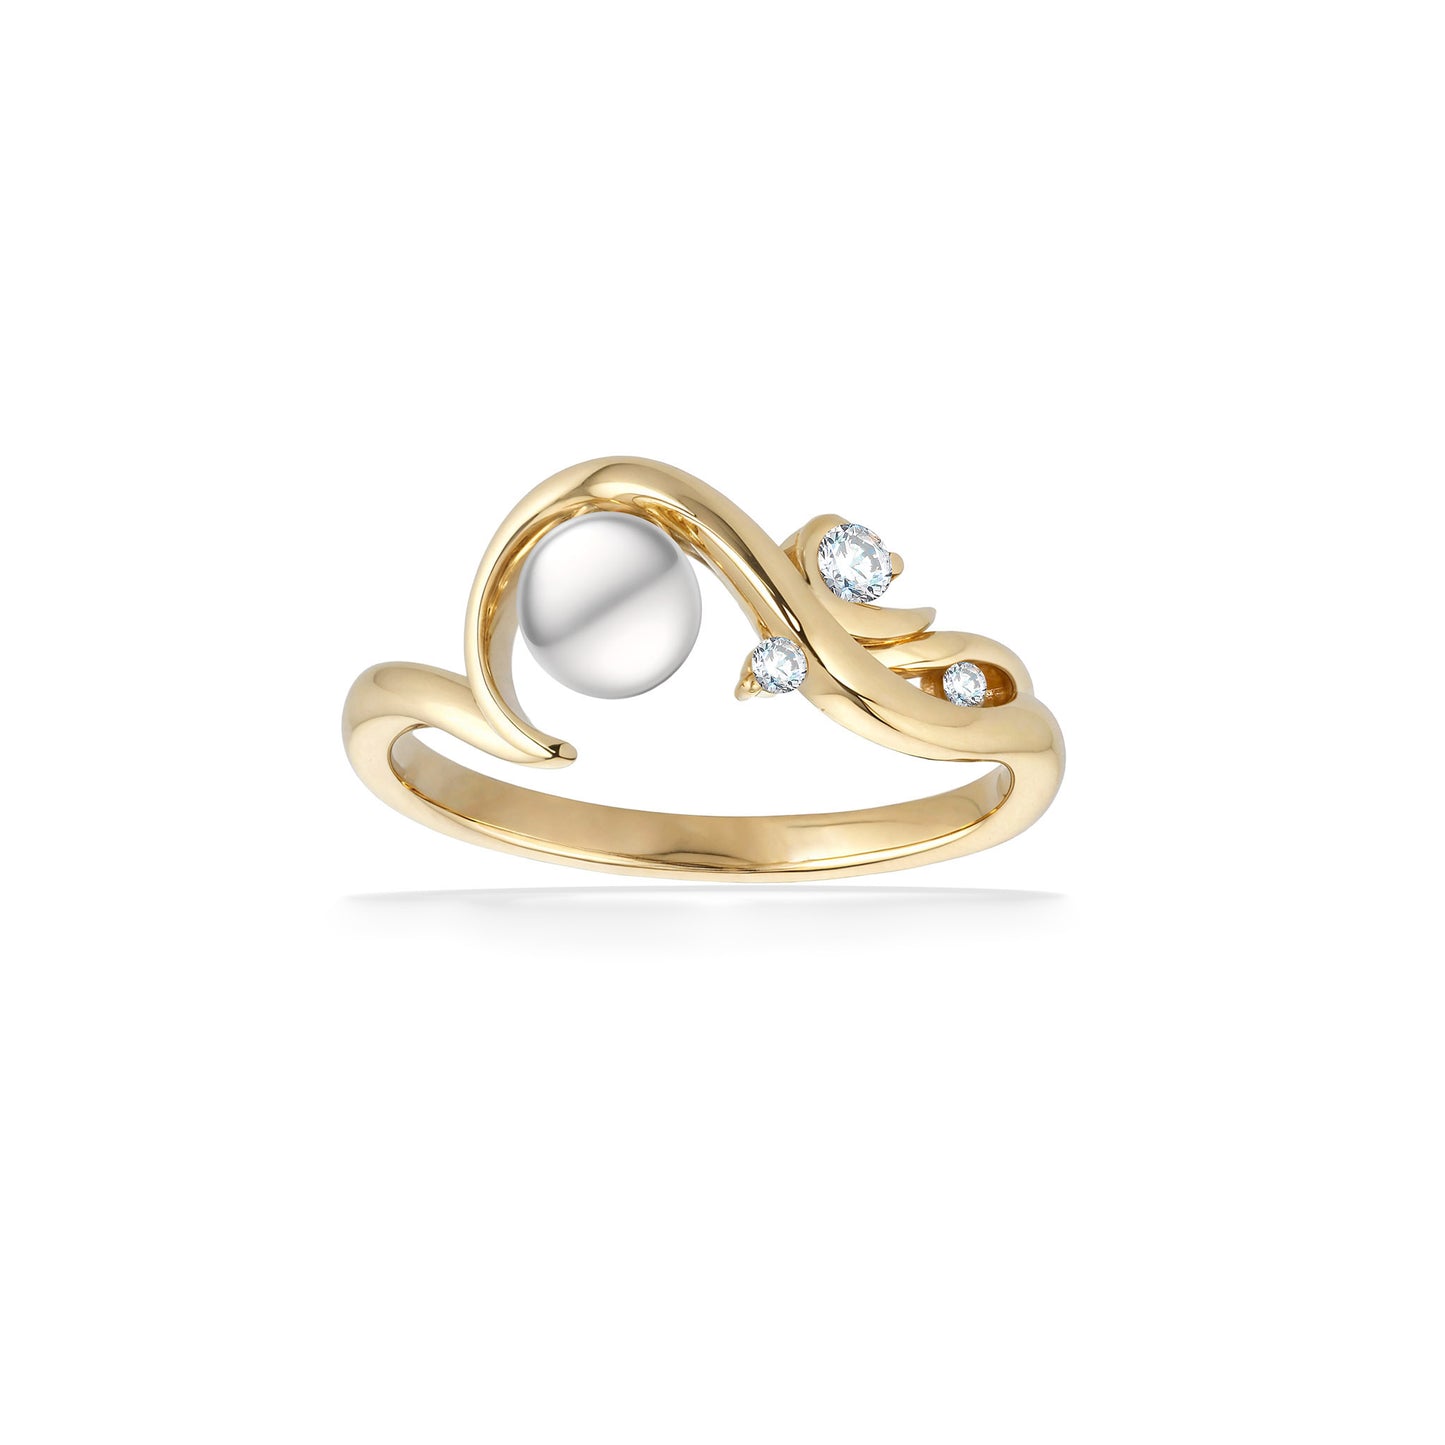 04558 - 14K Yellow Gold - Waterfall Diamond Ring, Size 8